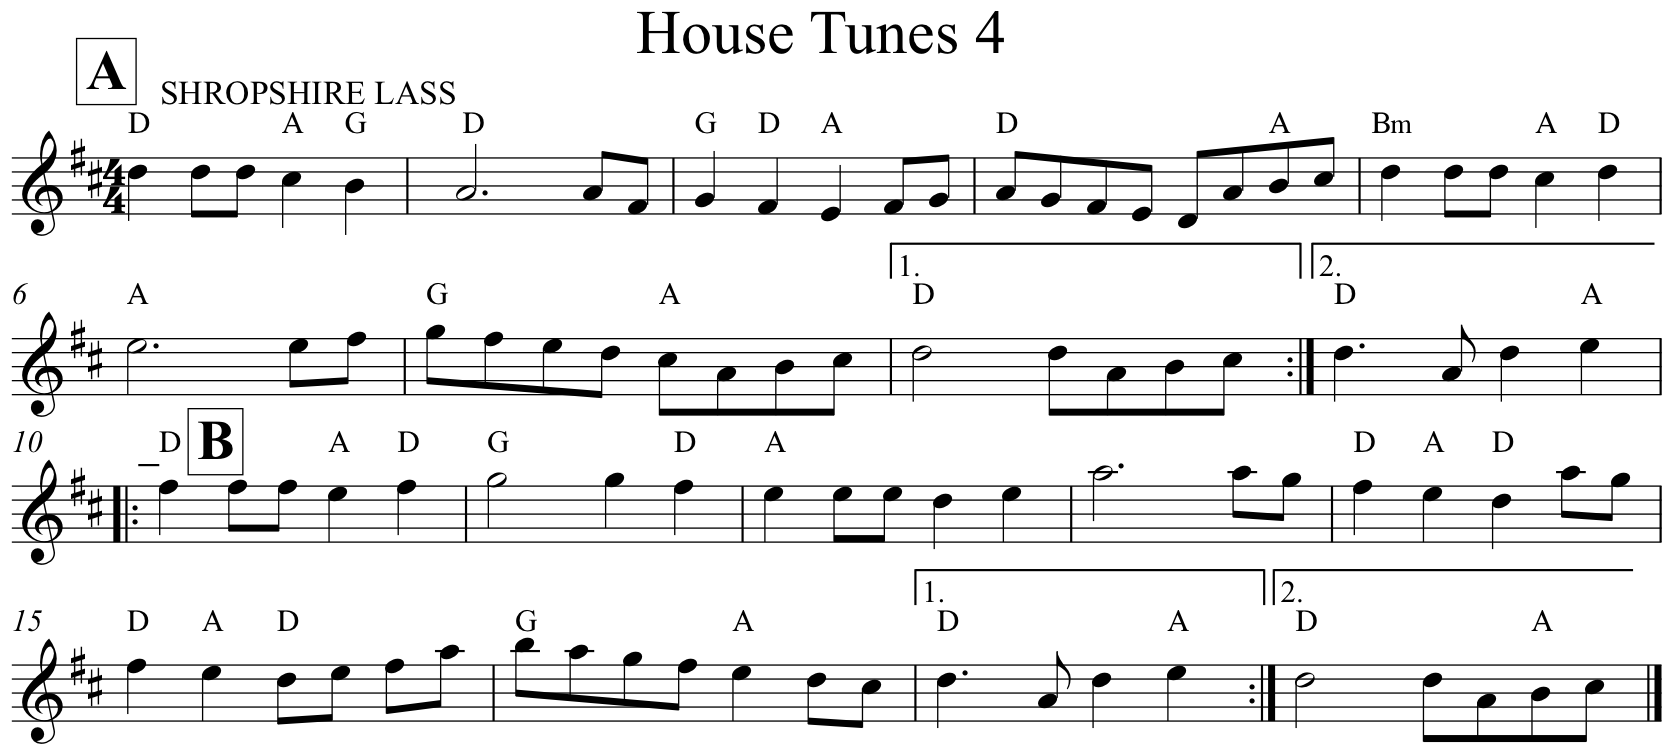 House Tunes 4